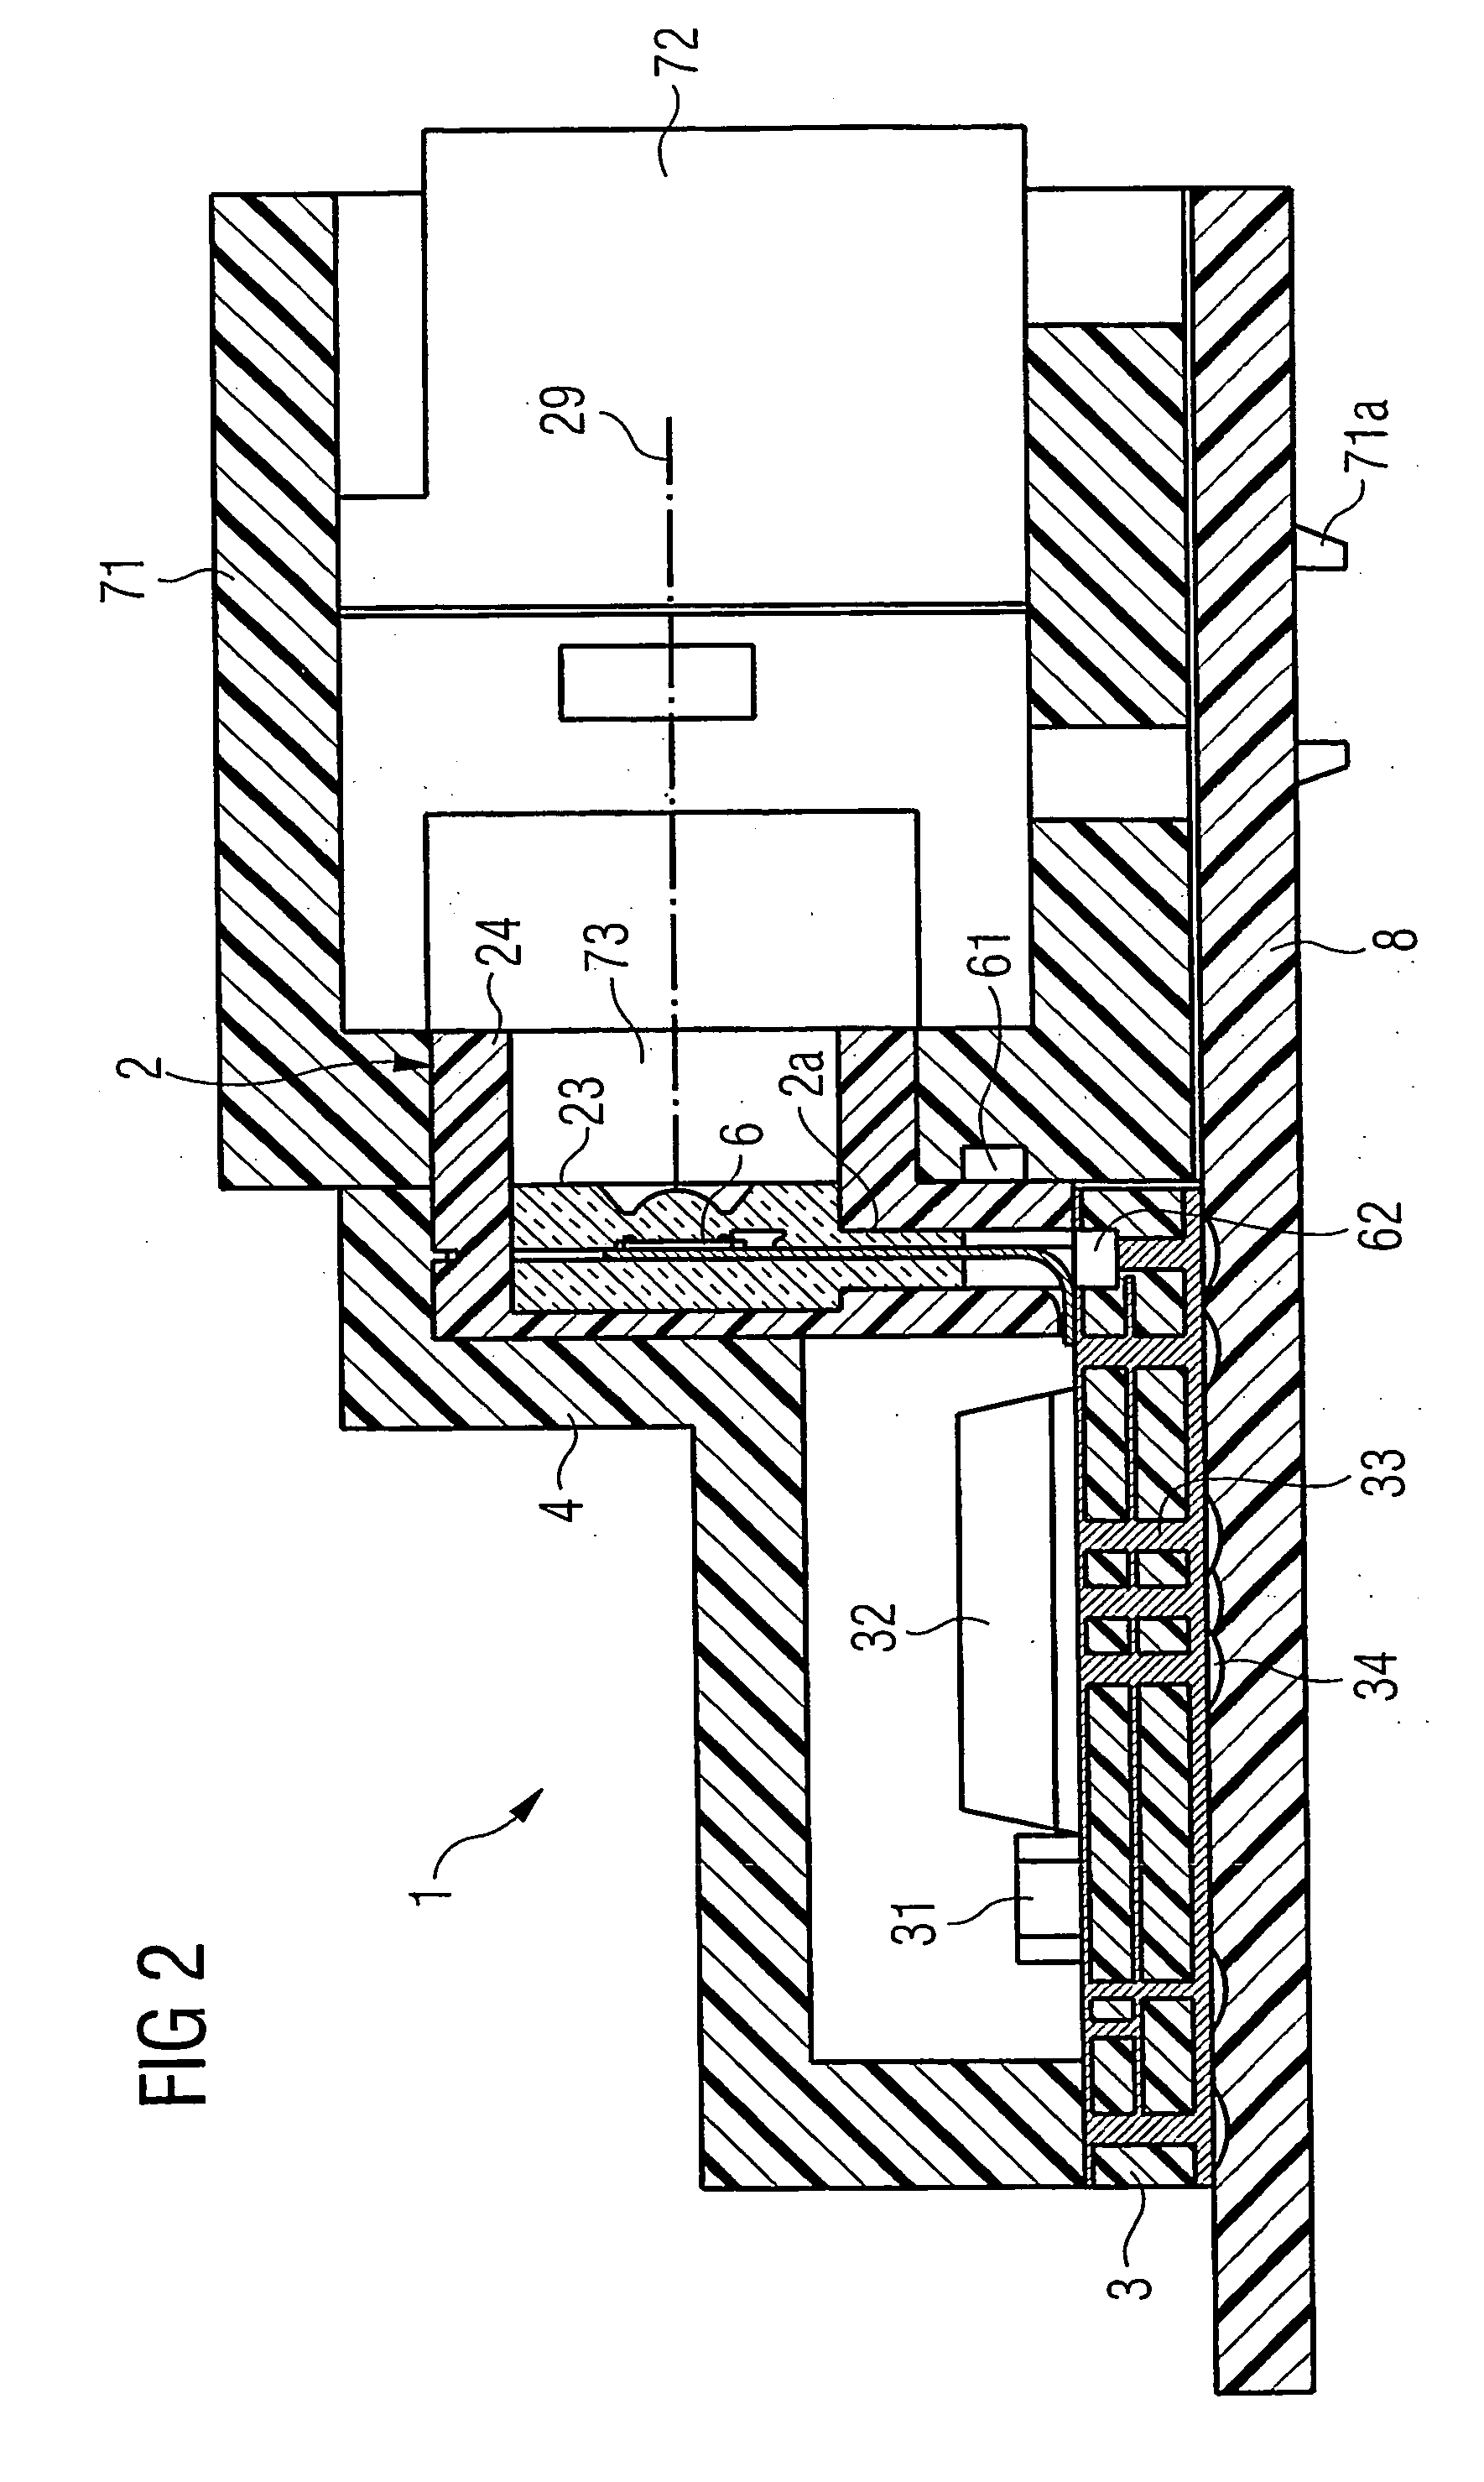 Optoelectronic module and plug arrangement